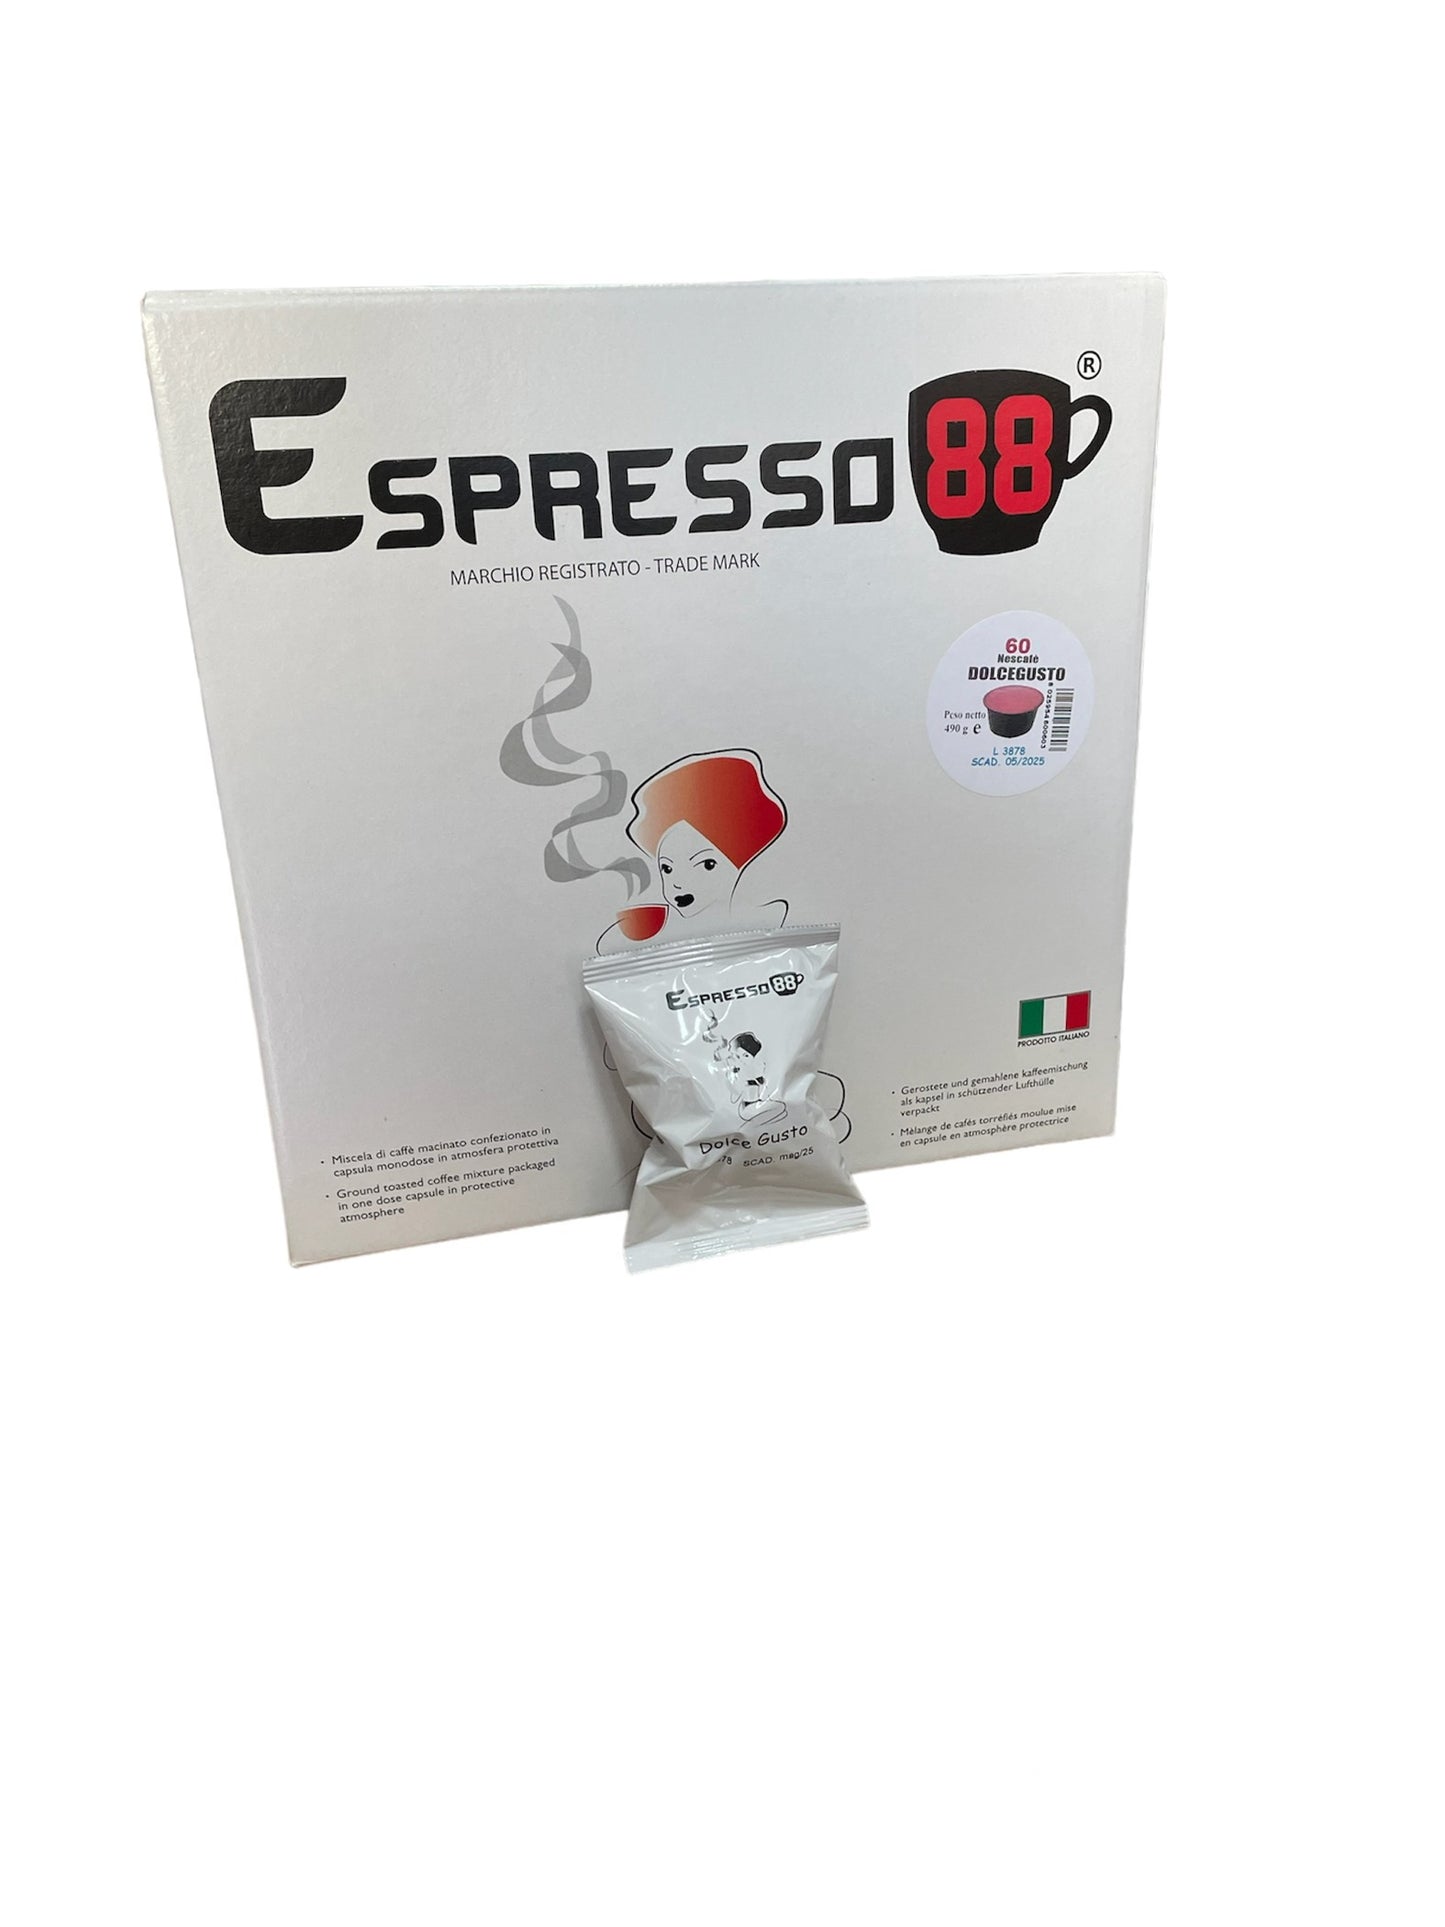 60 Dolce Gusto Espresso 88